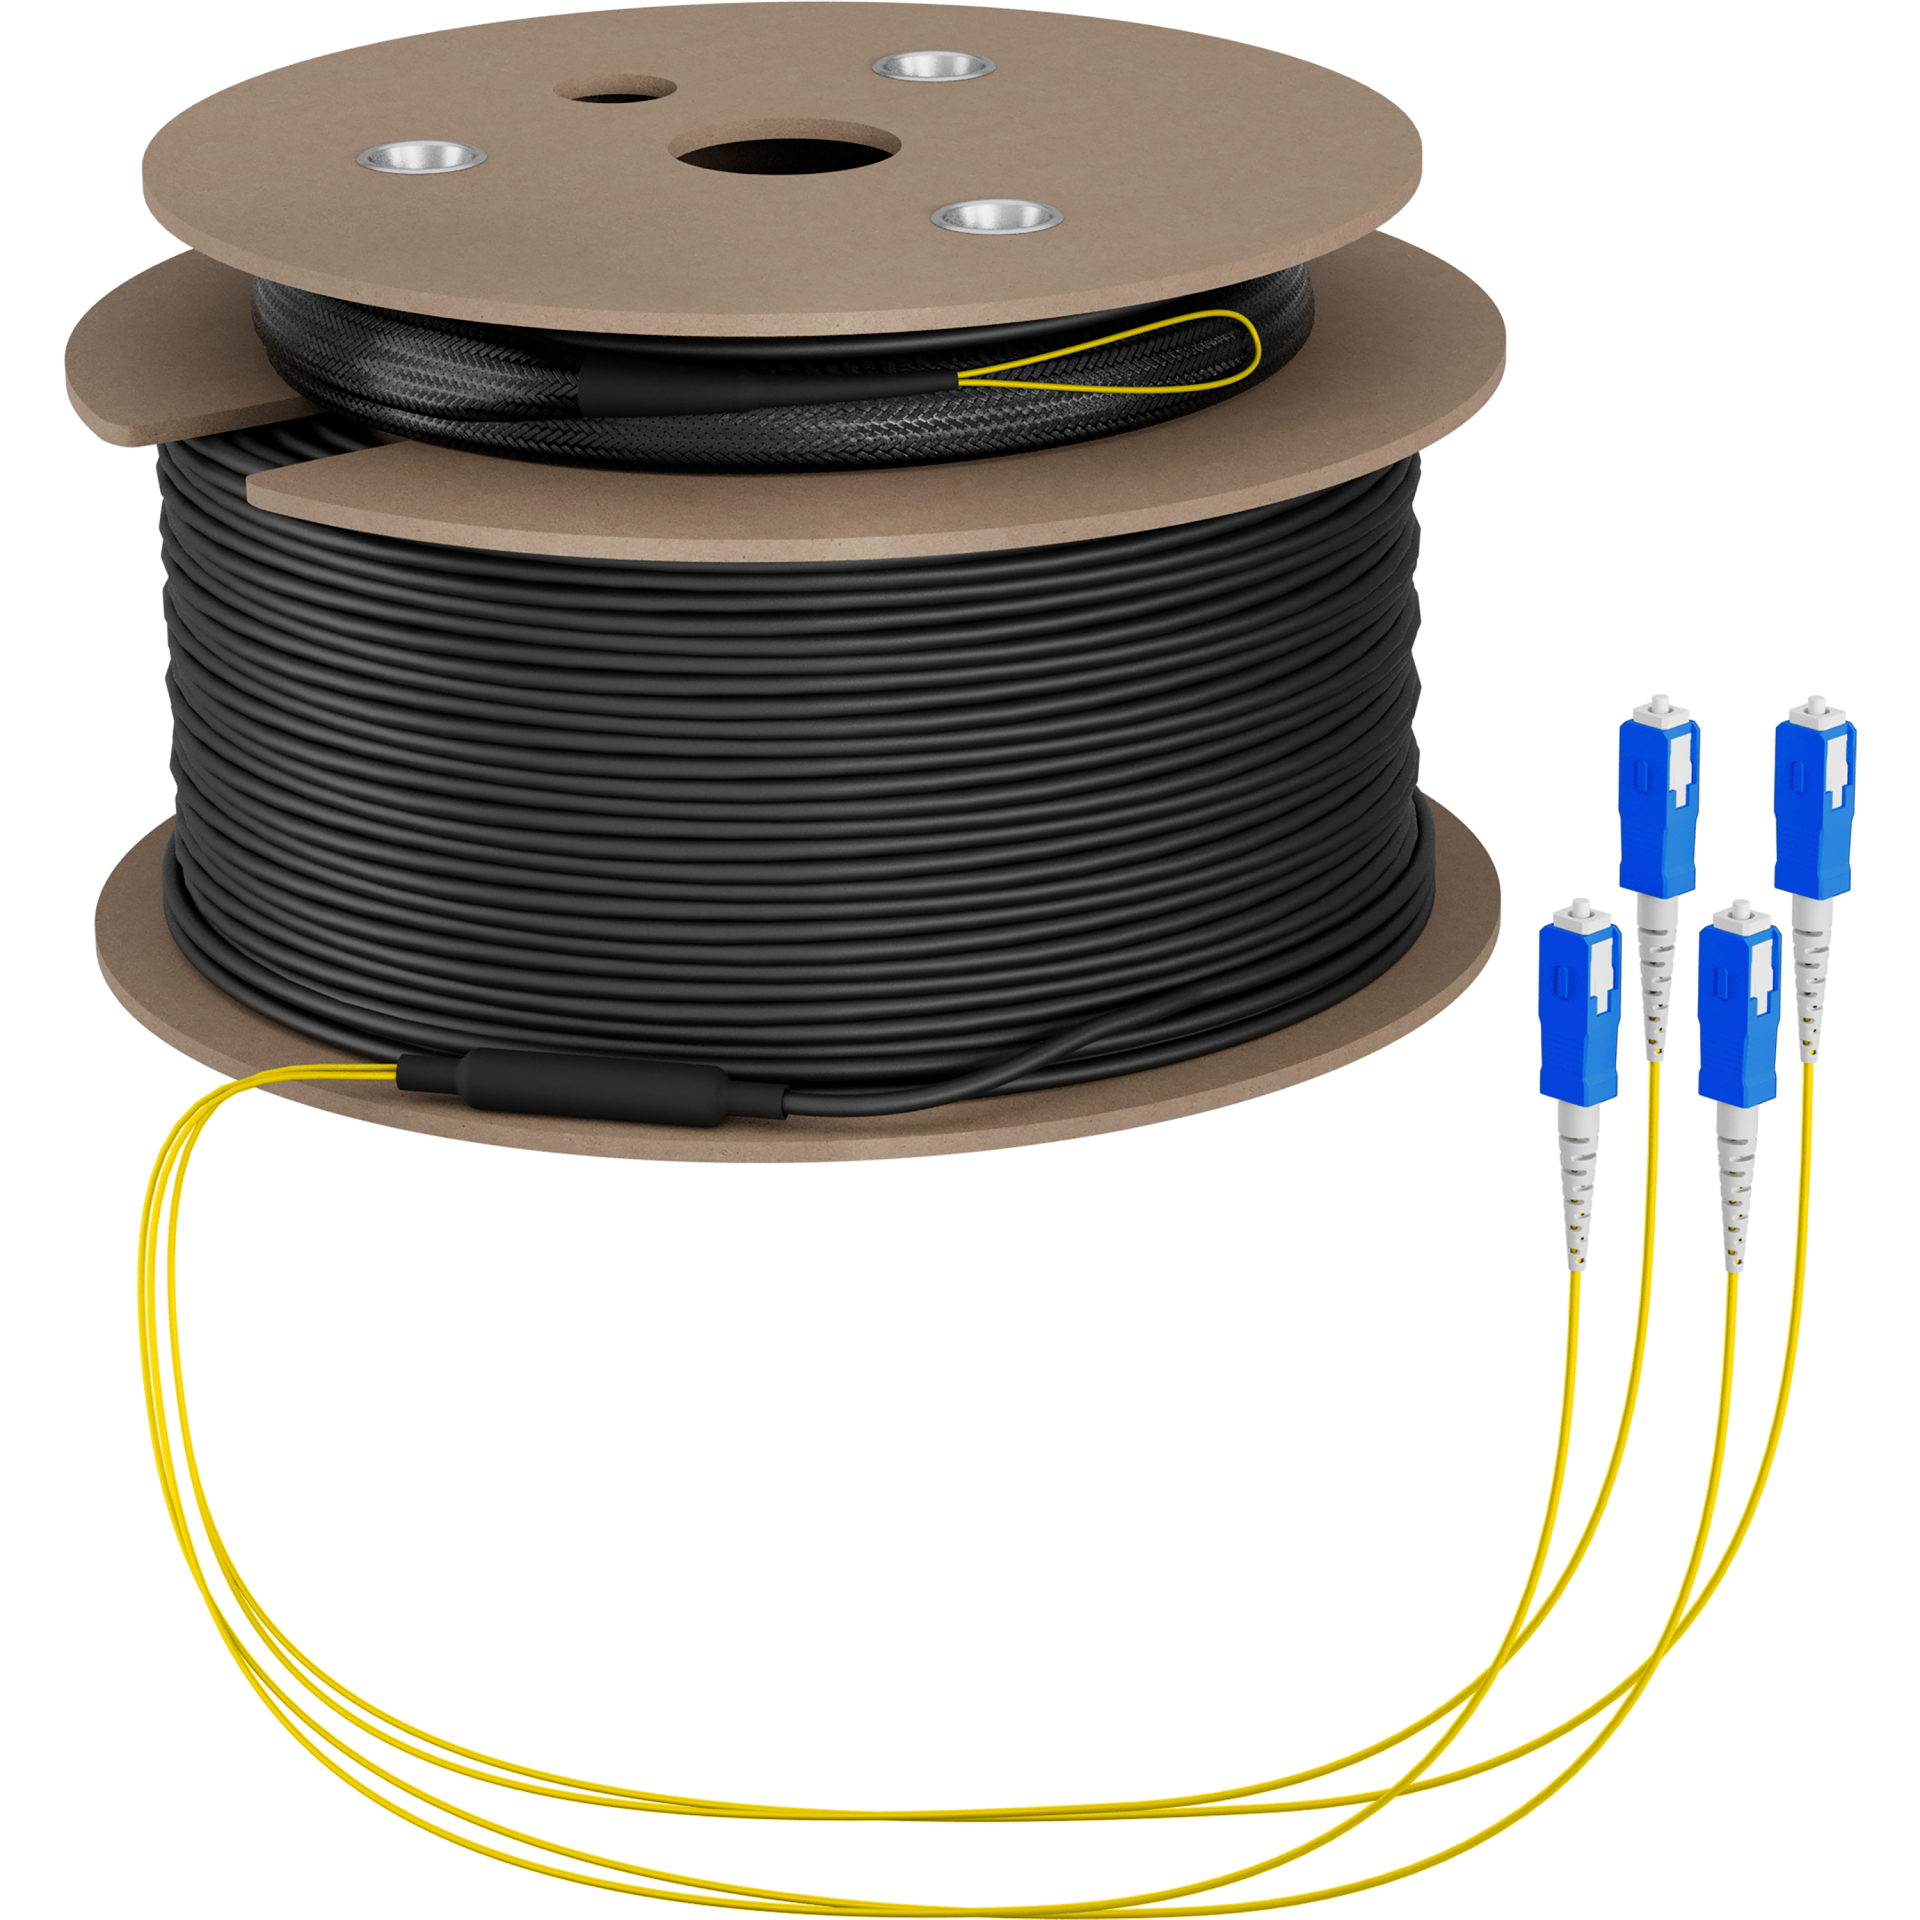 Trunk cable U-DQ(ZN)BH OS2 4E (1x4) SC-SC,200m Dca LSZH